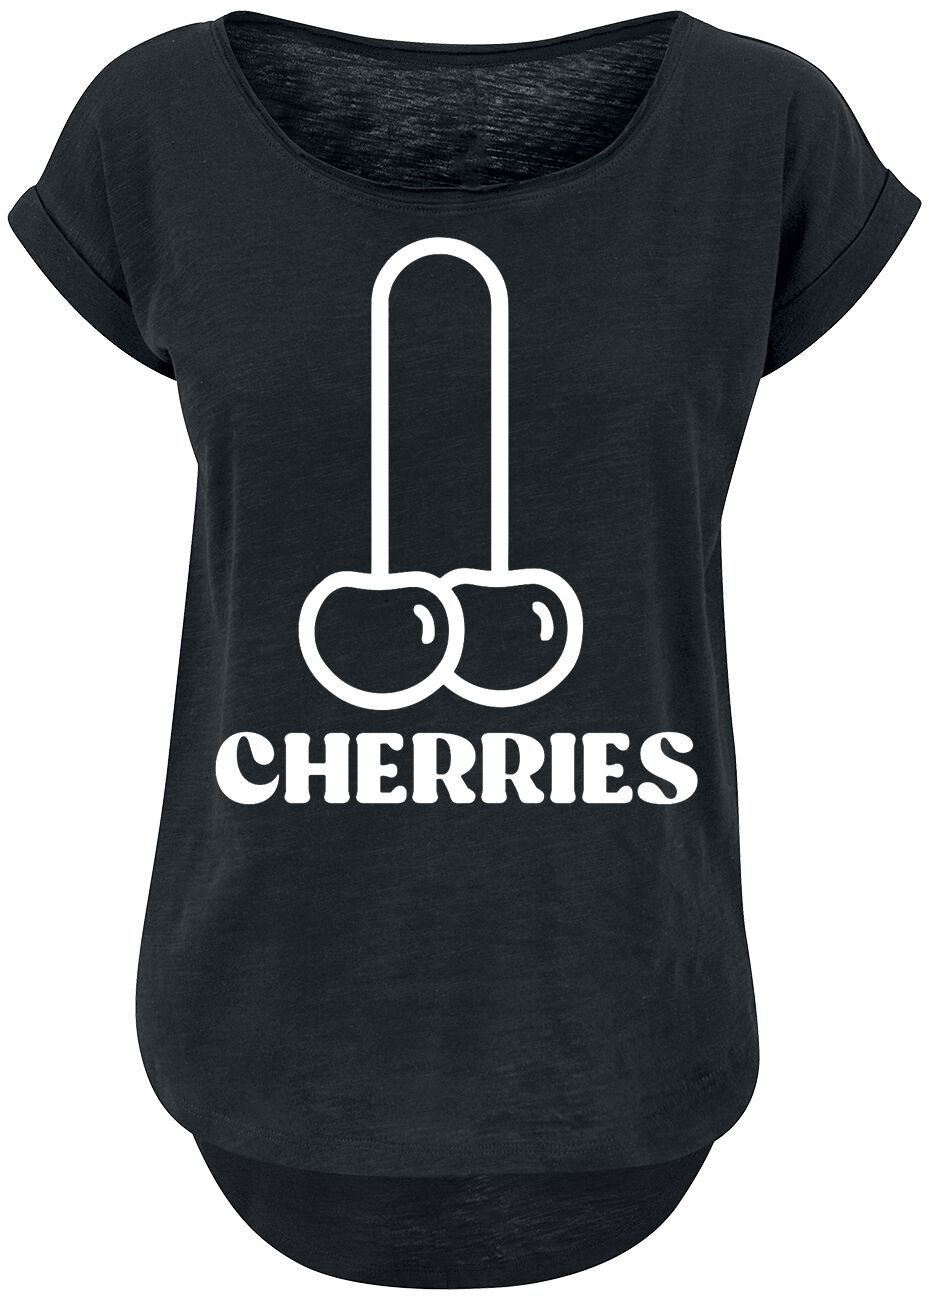 T-Shirt Manches courtes Fun de Food - Cherries - XS à 5XL - pour Femme - noir